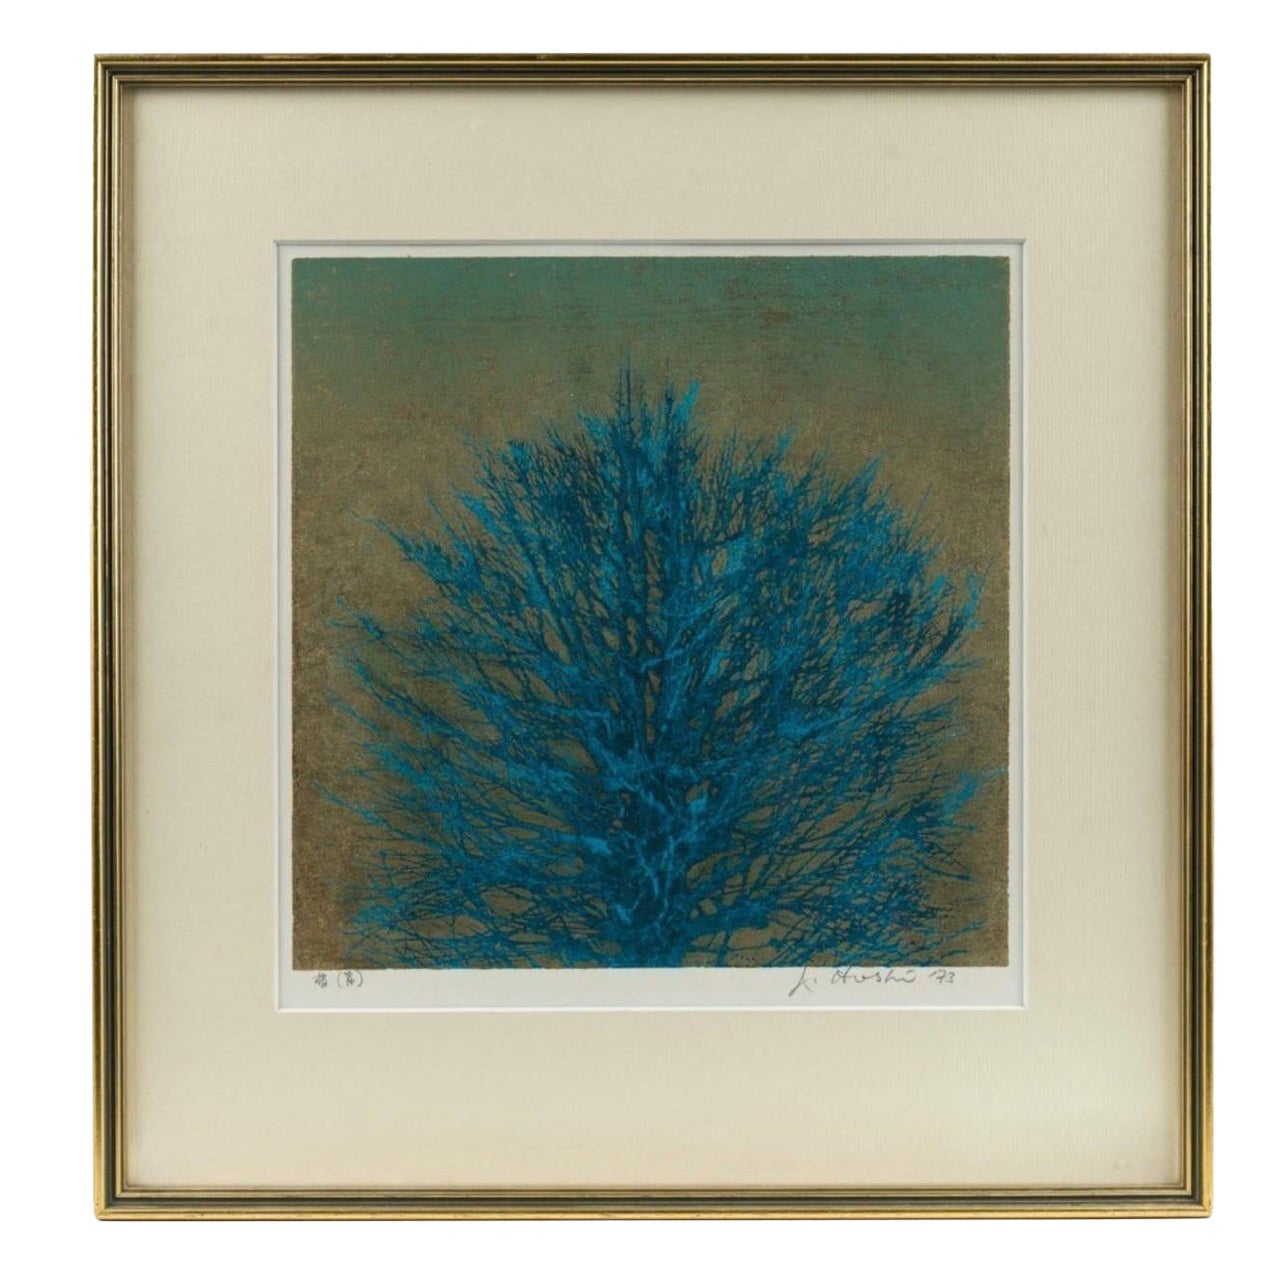 JOICHI HOSHI (1911-1979), Blauer Baum, Holzschnitt, unten rechts signiert, datiert 1973